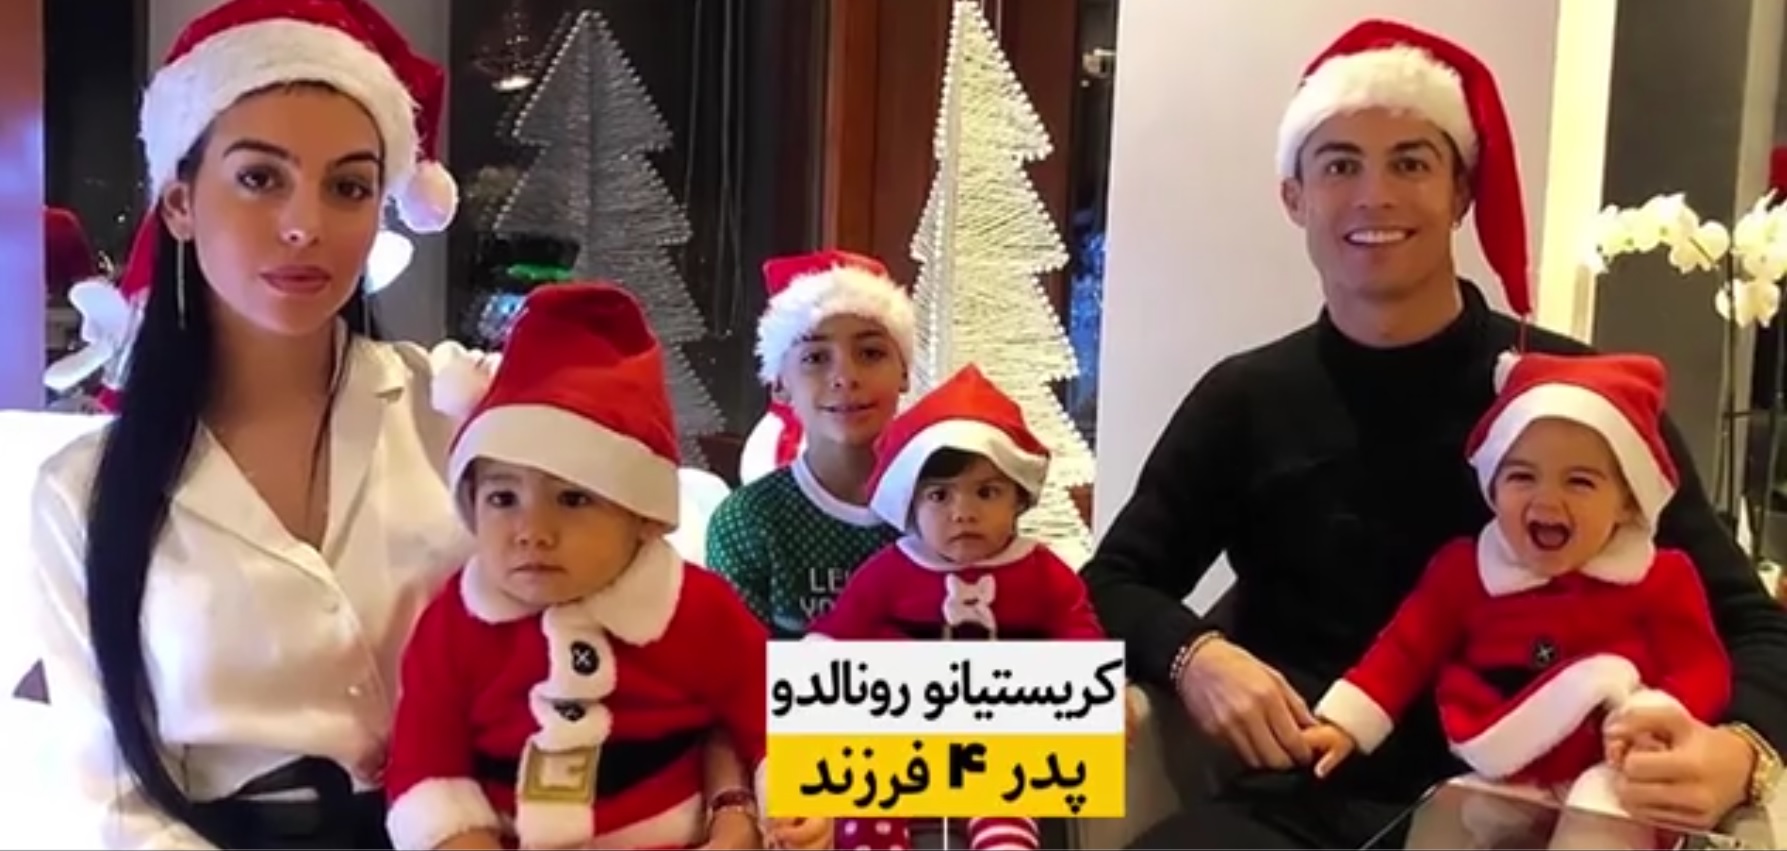 سلبریتی های ایرانی از هم نوعان خود در غرب فرزندآوری را یاد بگیرند